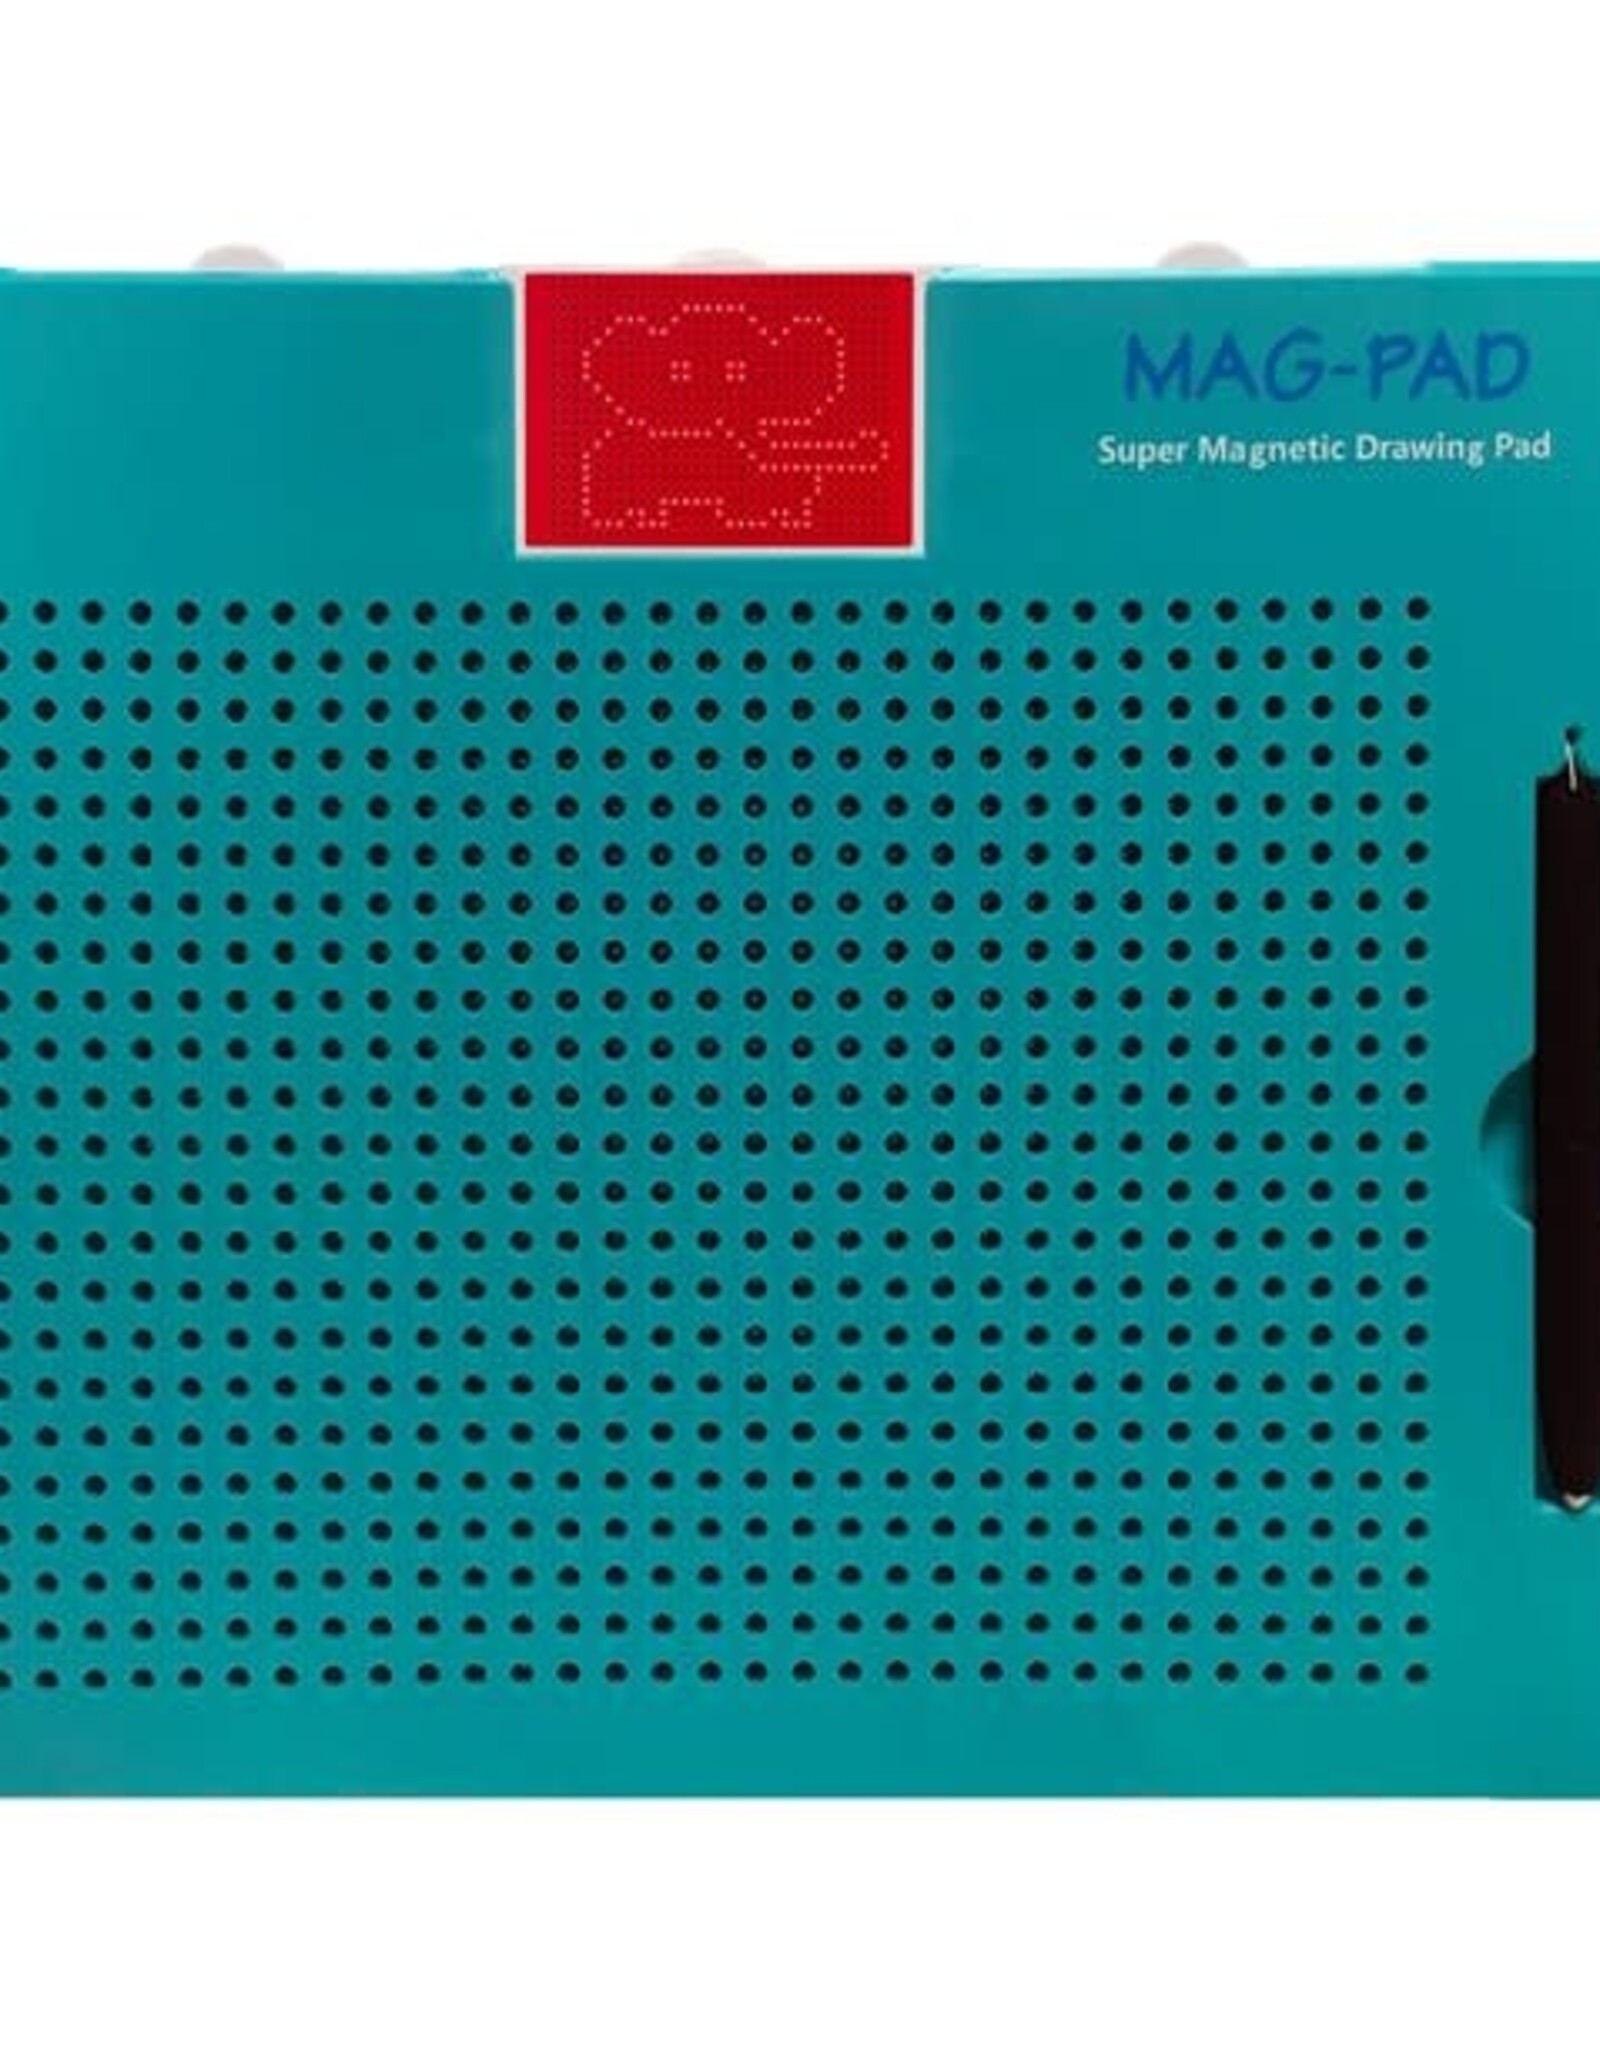 MAG-PAD Drawing Board Teal